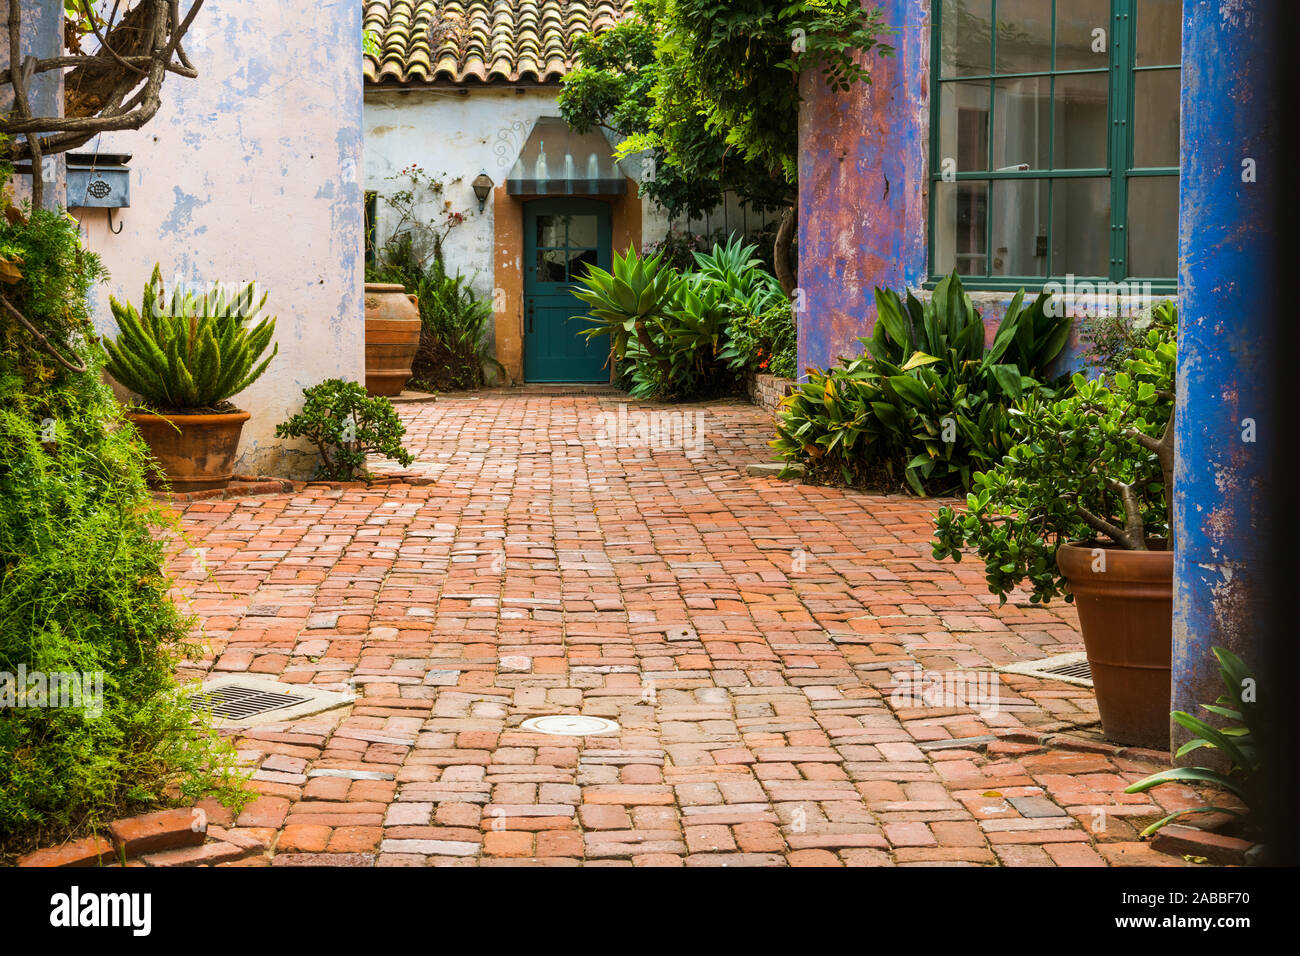 Malerische Garten im Innenhof mit Topfpflanzen und durch rustikal verputzten Wänden in lebendigen Farben, lila, pink und blau und mit Ziegeln gepflasterten Stockfoto